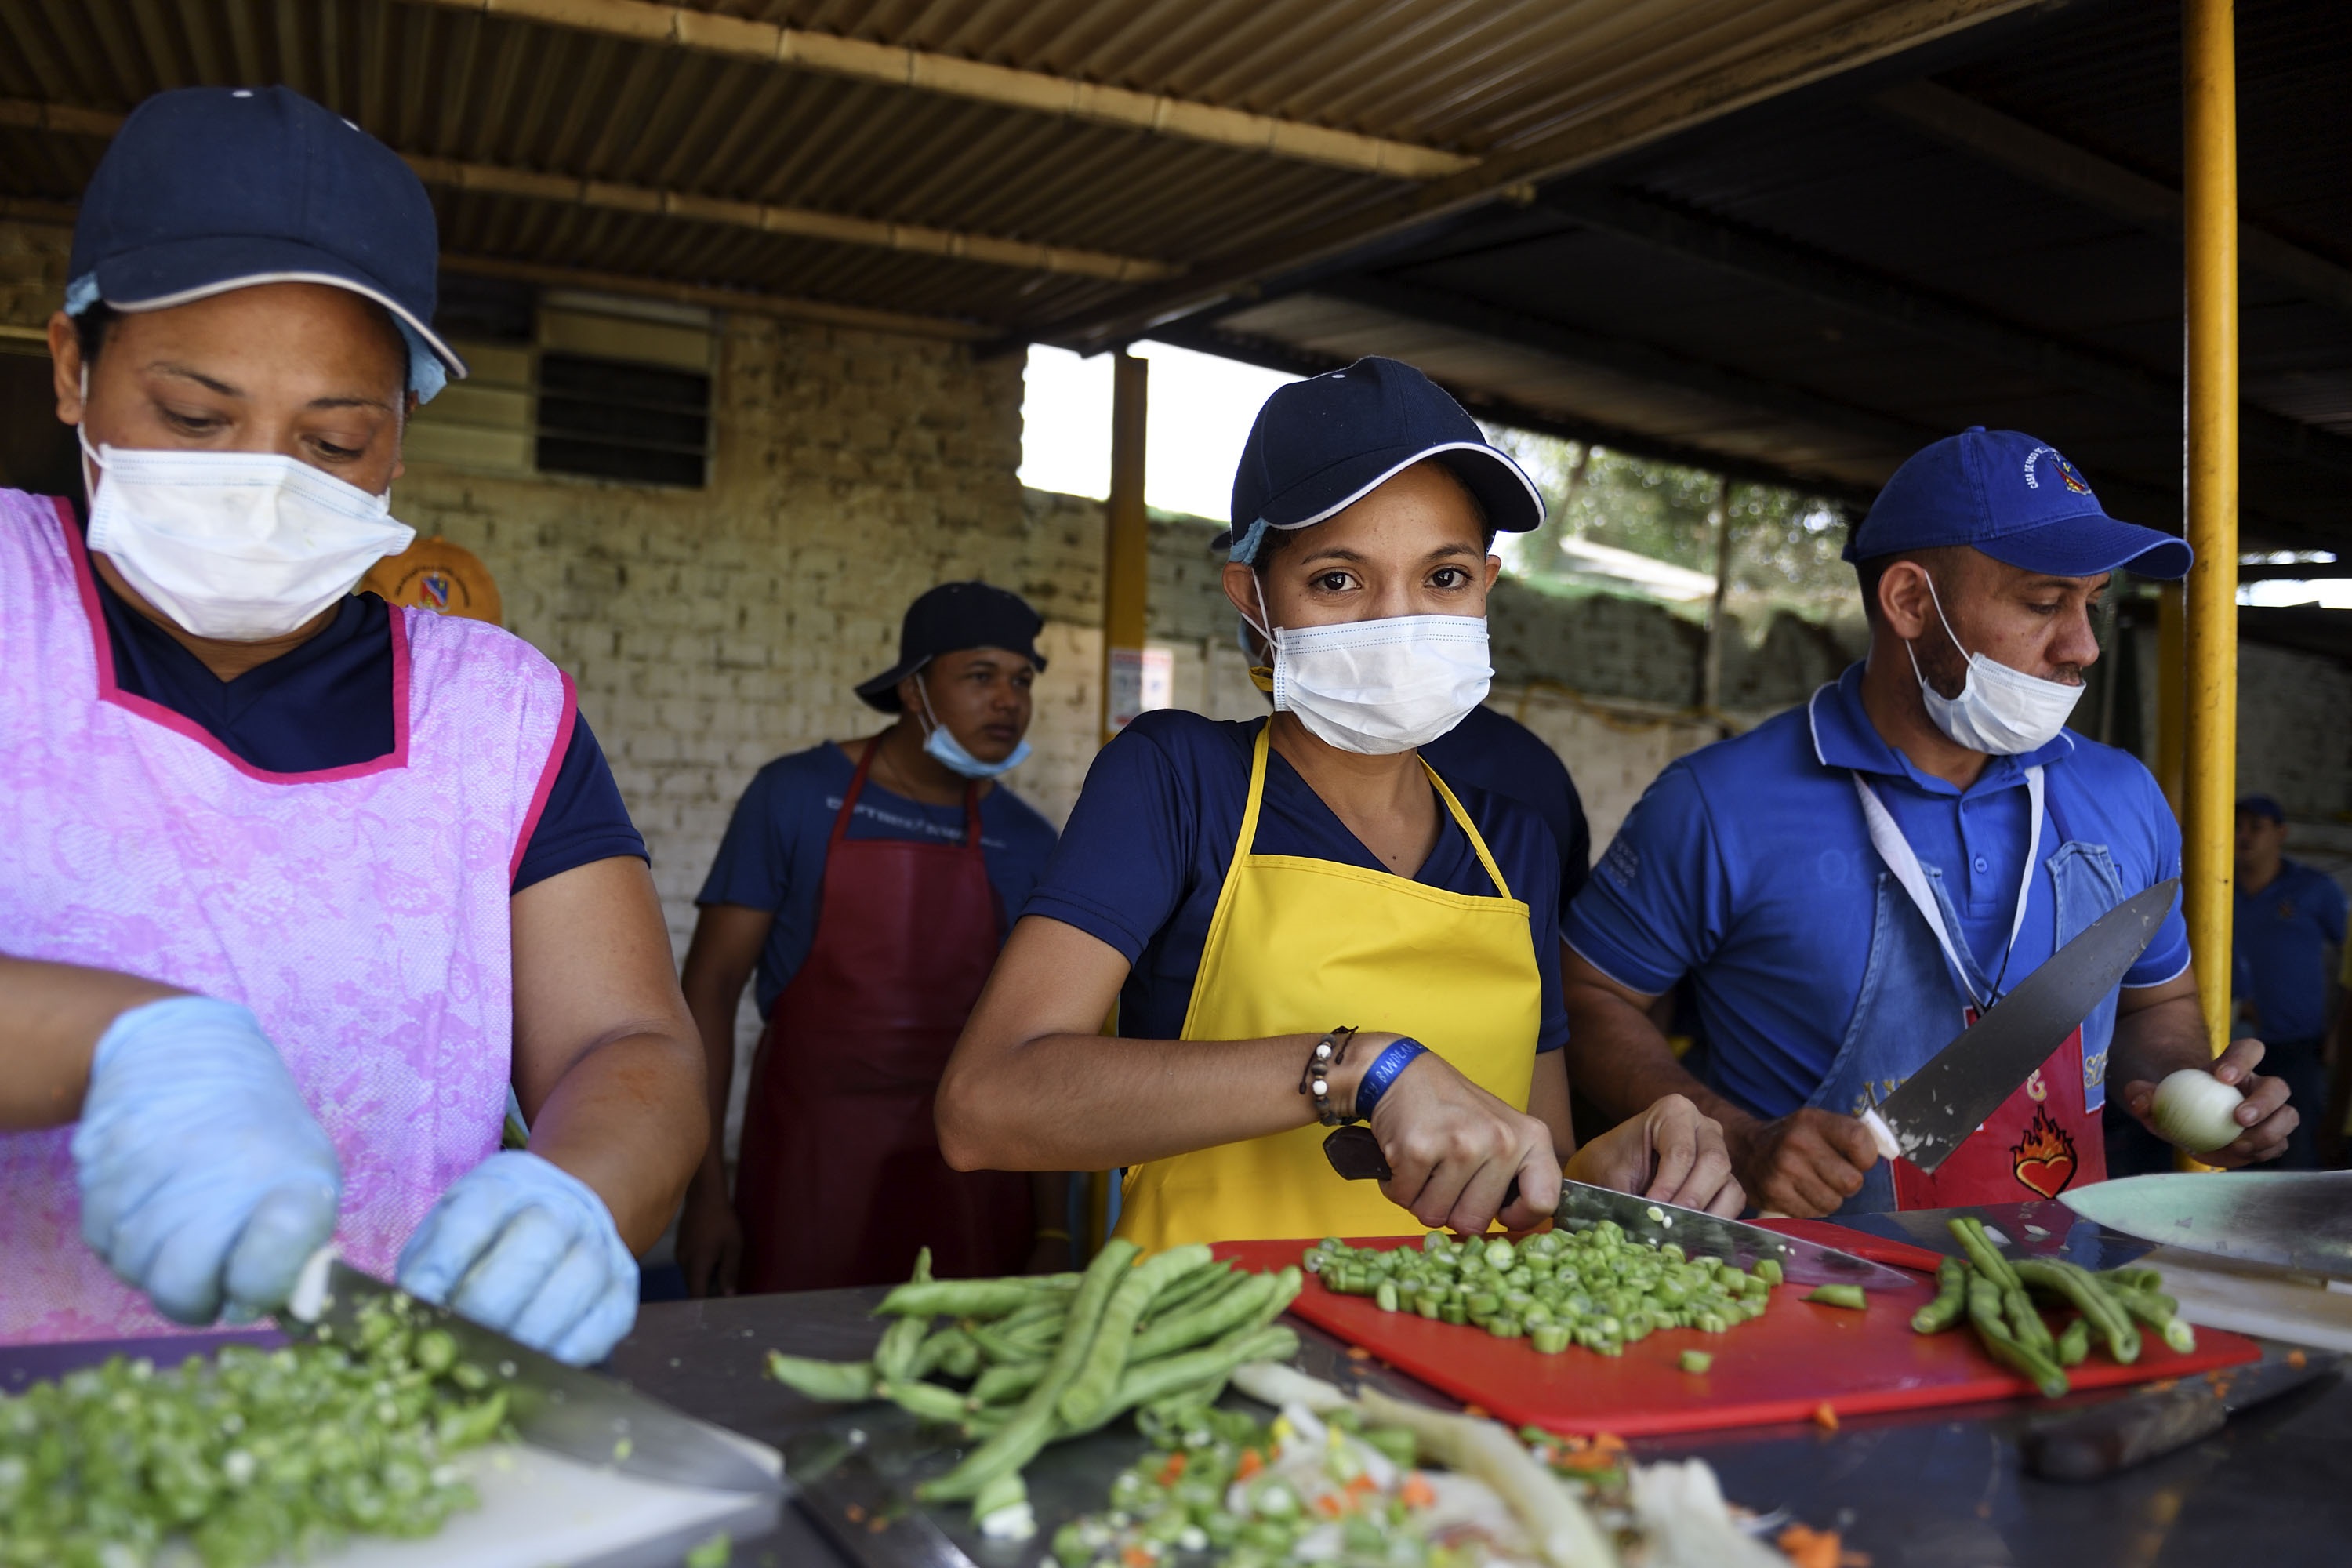 Mónica Jiménez (Mitte), 21, ist aus Maracay in Venezuela nach Cúcuta geflüchtet und arbeitet ehrenamtlich als Küchenhelferin bei der Versorgung der Flüchtlinge mit. Foto: Adveniat/Florian Kopp